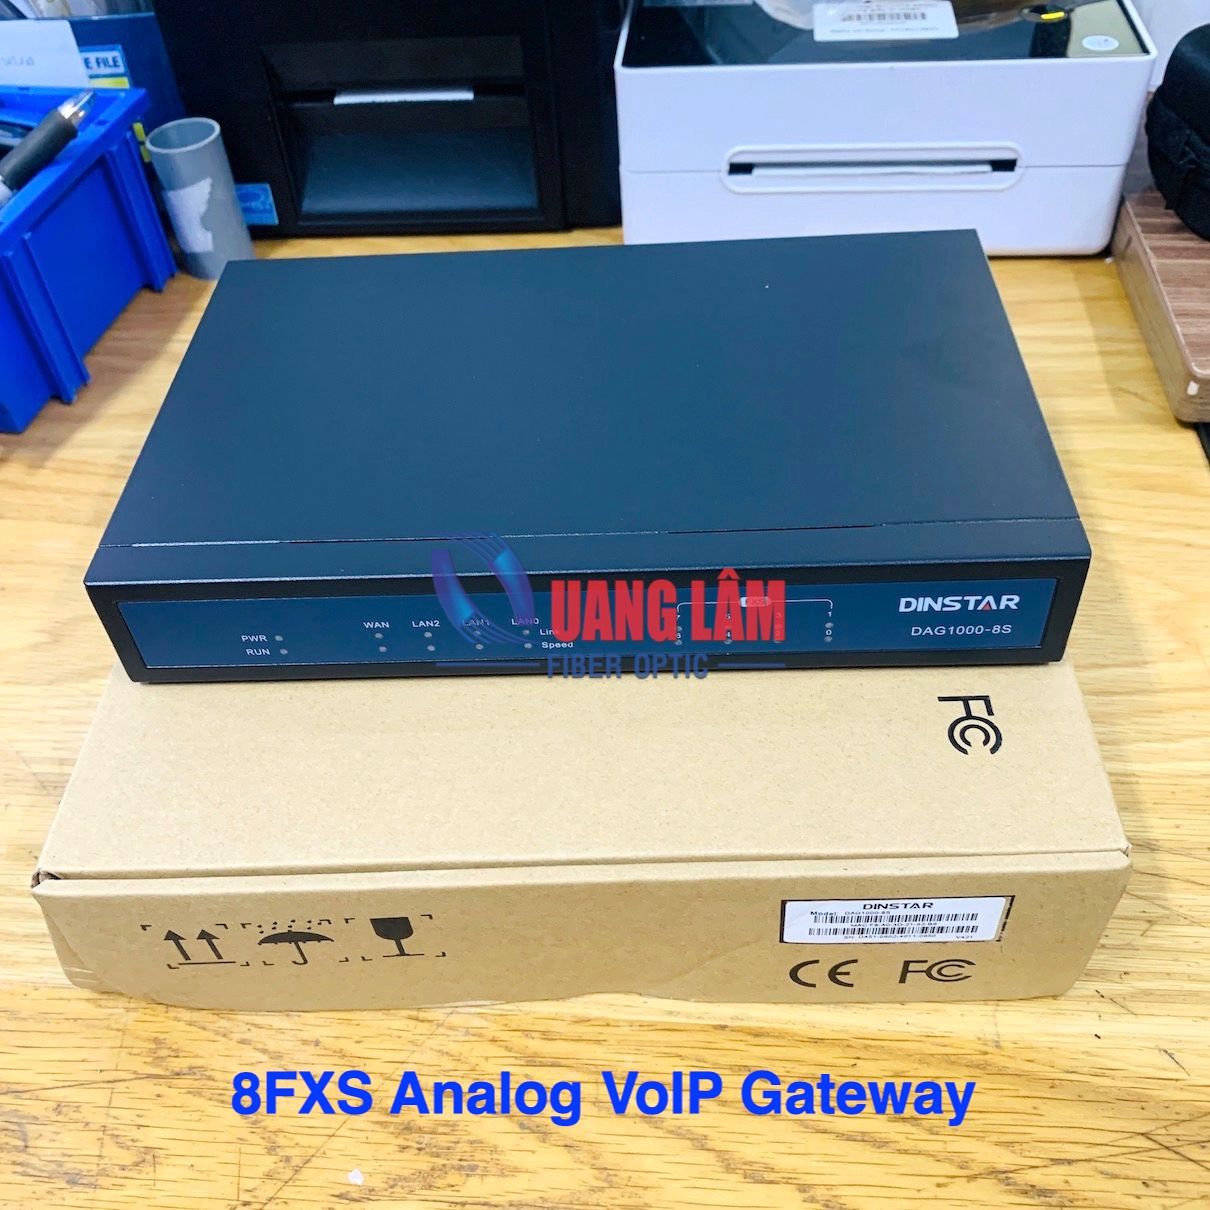 DAG1000-8S - 8FXS Analog VoIP Gateway Dinstar